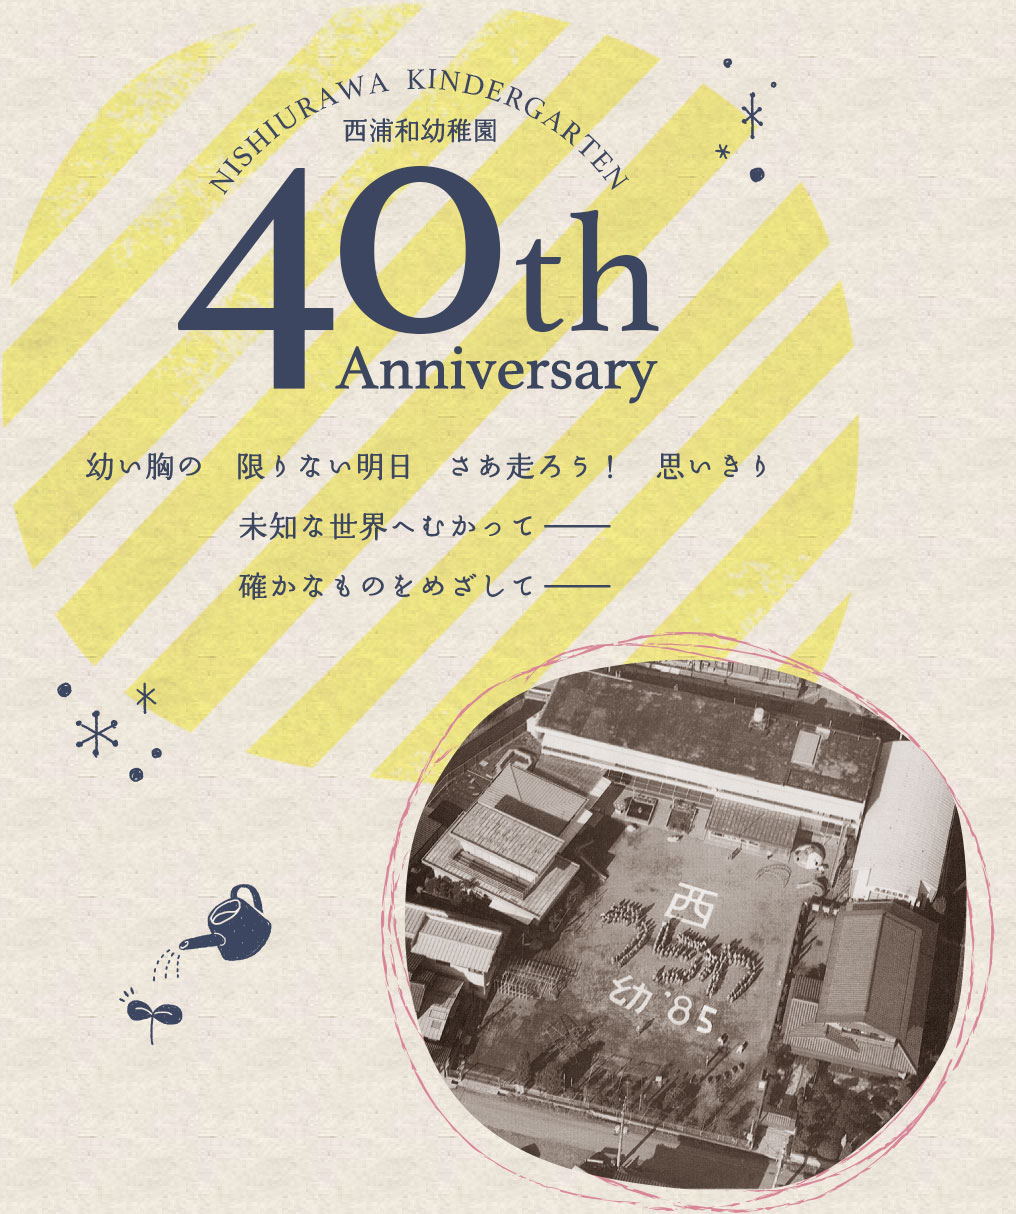 西浦和幼稚園 40th Anniversary 幼い胸の限りない明日 さあ走ろう！思いきり 未知な世界へむかって− 確かなものをめざして−